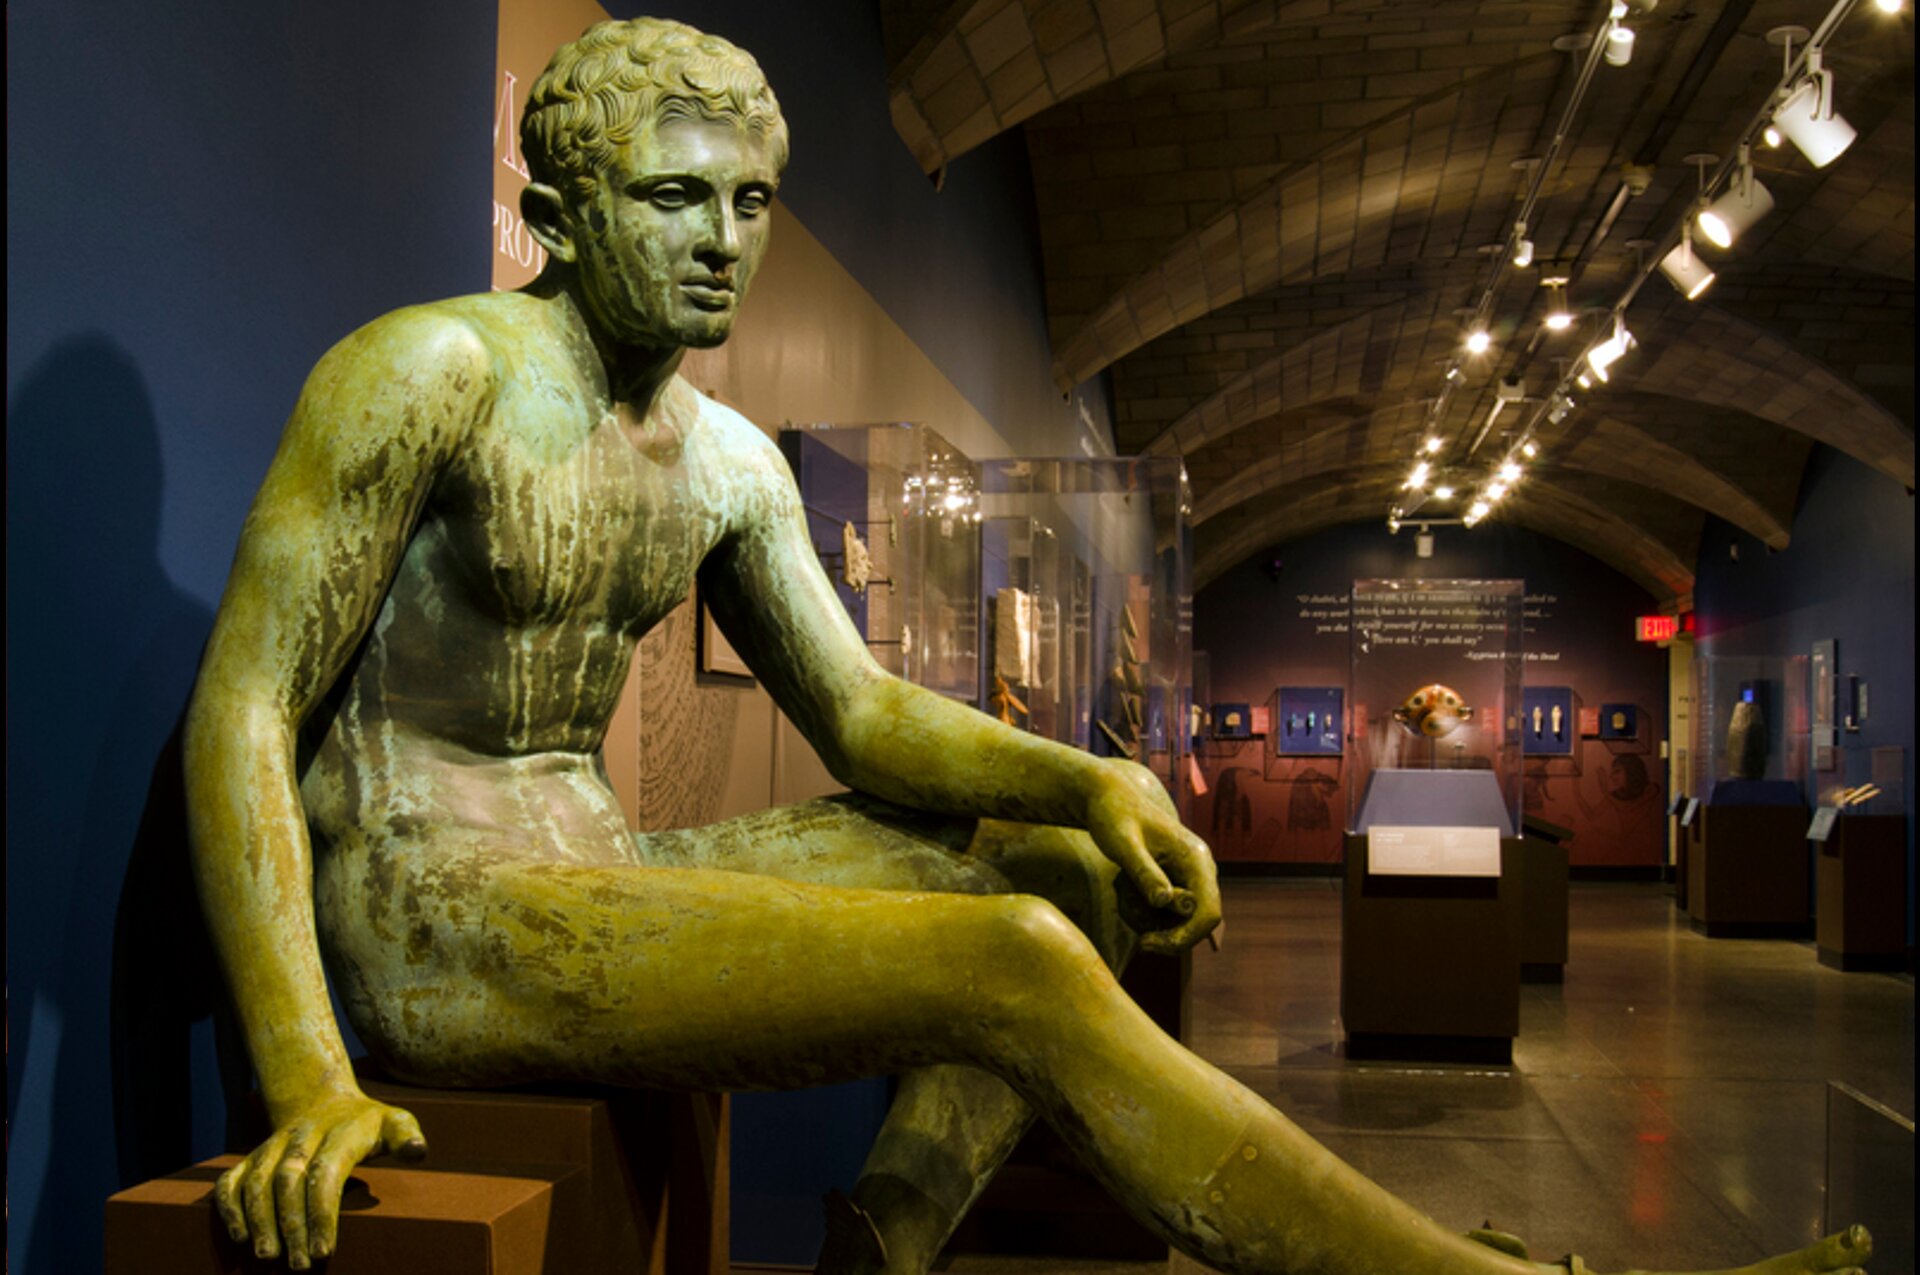 Zdjęcie przedstawia rzeźbę nagiego, młodego mężczyzny. Mężczyzna siedzi na postumencie. Rzeźba znajduje się w muzeum, w tle są eksponaty w szklanych gablotach.